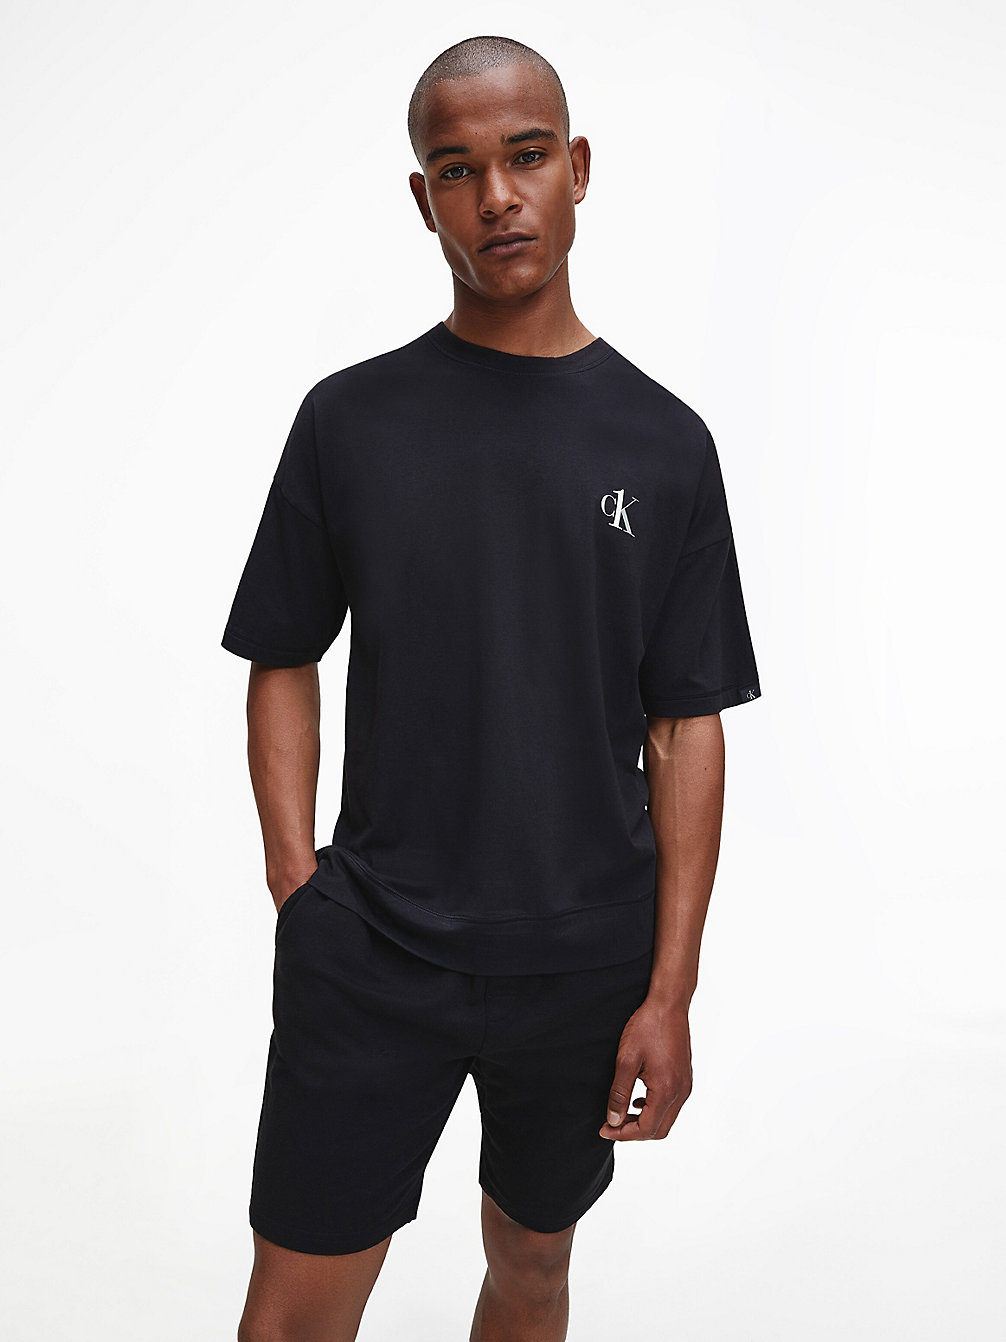 BLACK Lounge-T-Shirt - CK One undefined Herren Calvin Klein